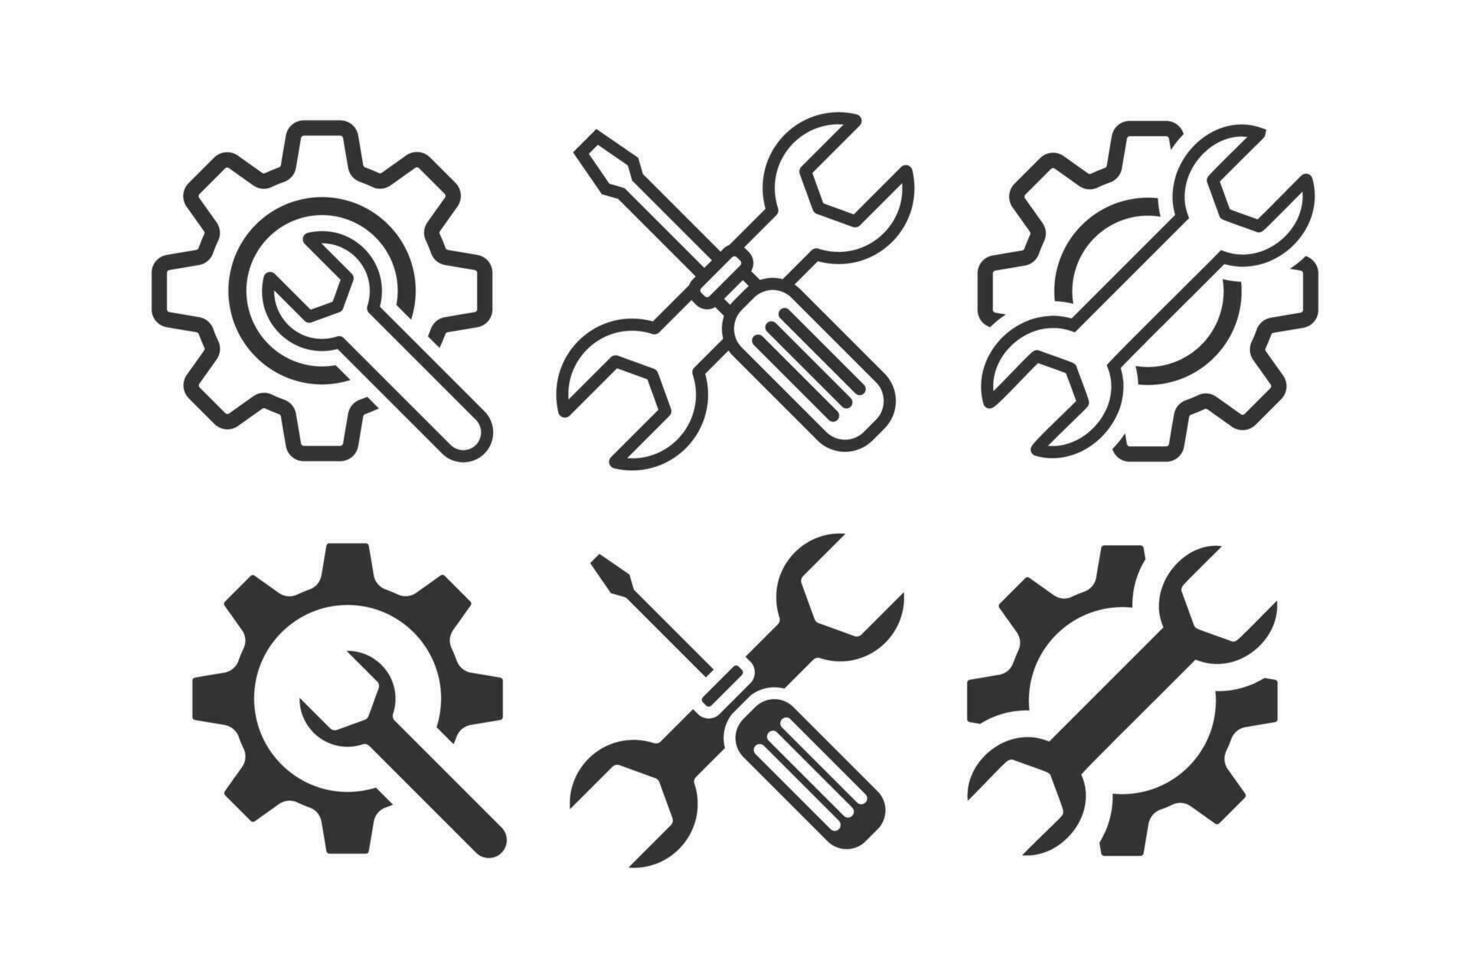 Servicio íconos colocar. llave inglesa, destornillador y engranaje icono colocar. vector ilustración diseño.